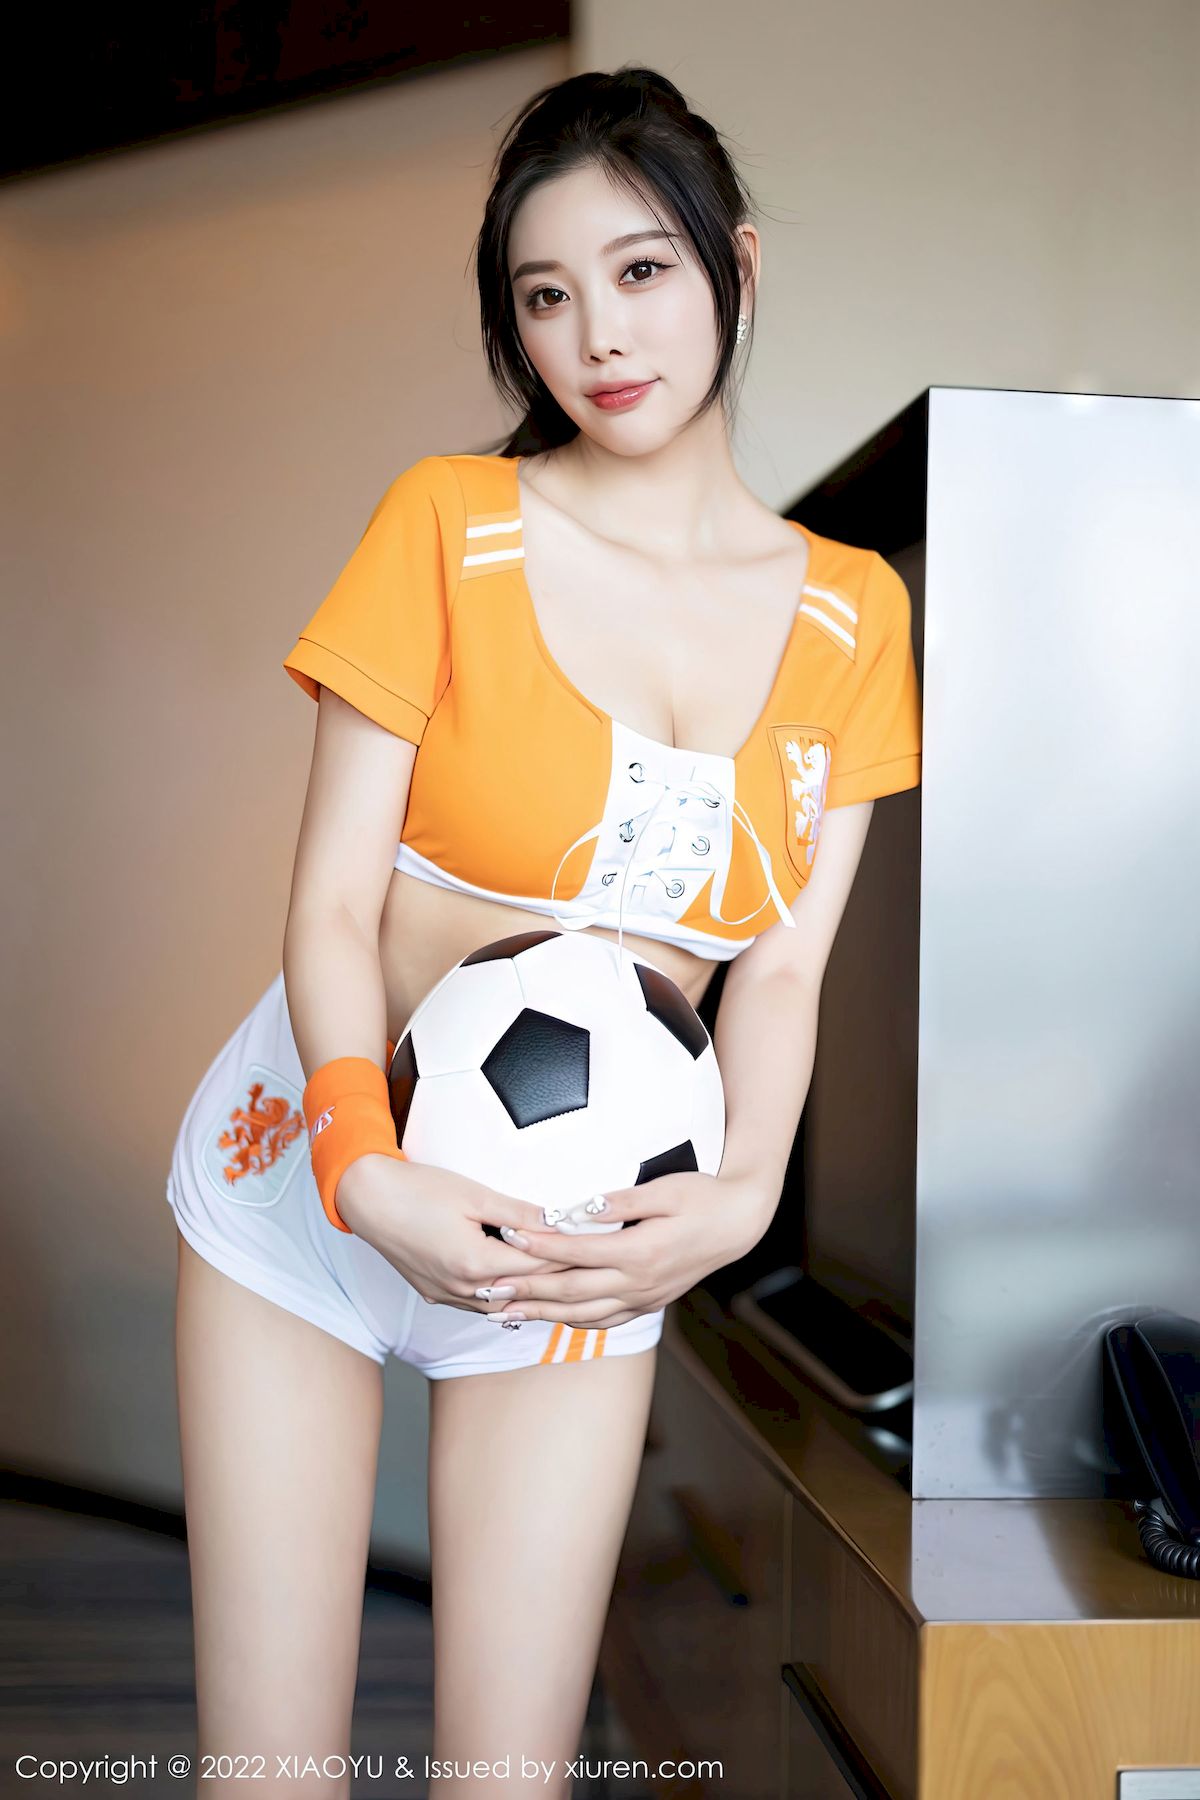 杨晨晨Yome - 橙色服饰+足球宝贝主题心愿旅拍